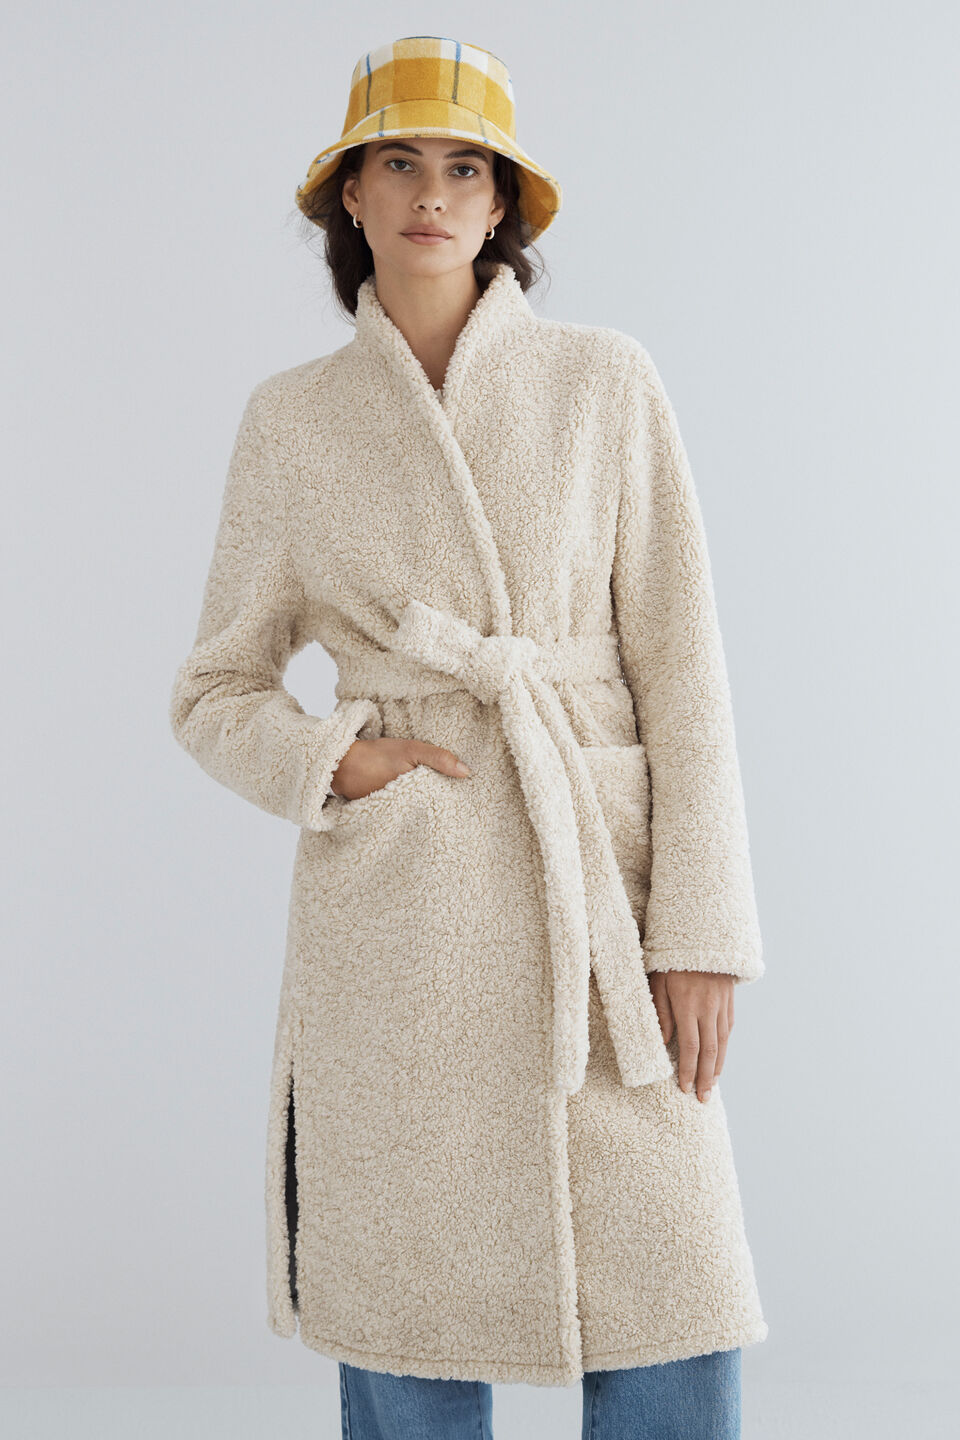 Shearling Robe Coat  Oat